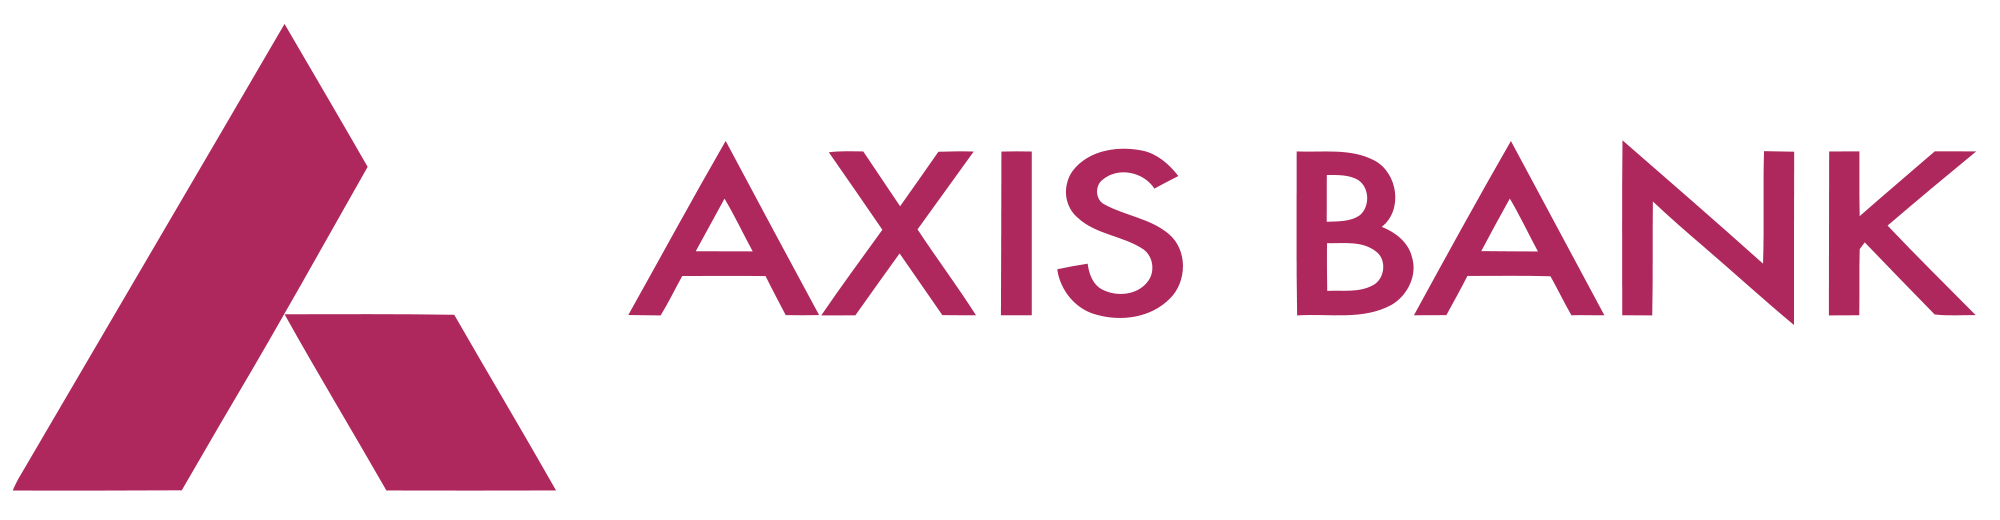 Axis Bank Brand Logo